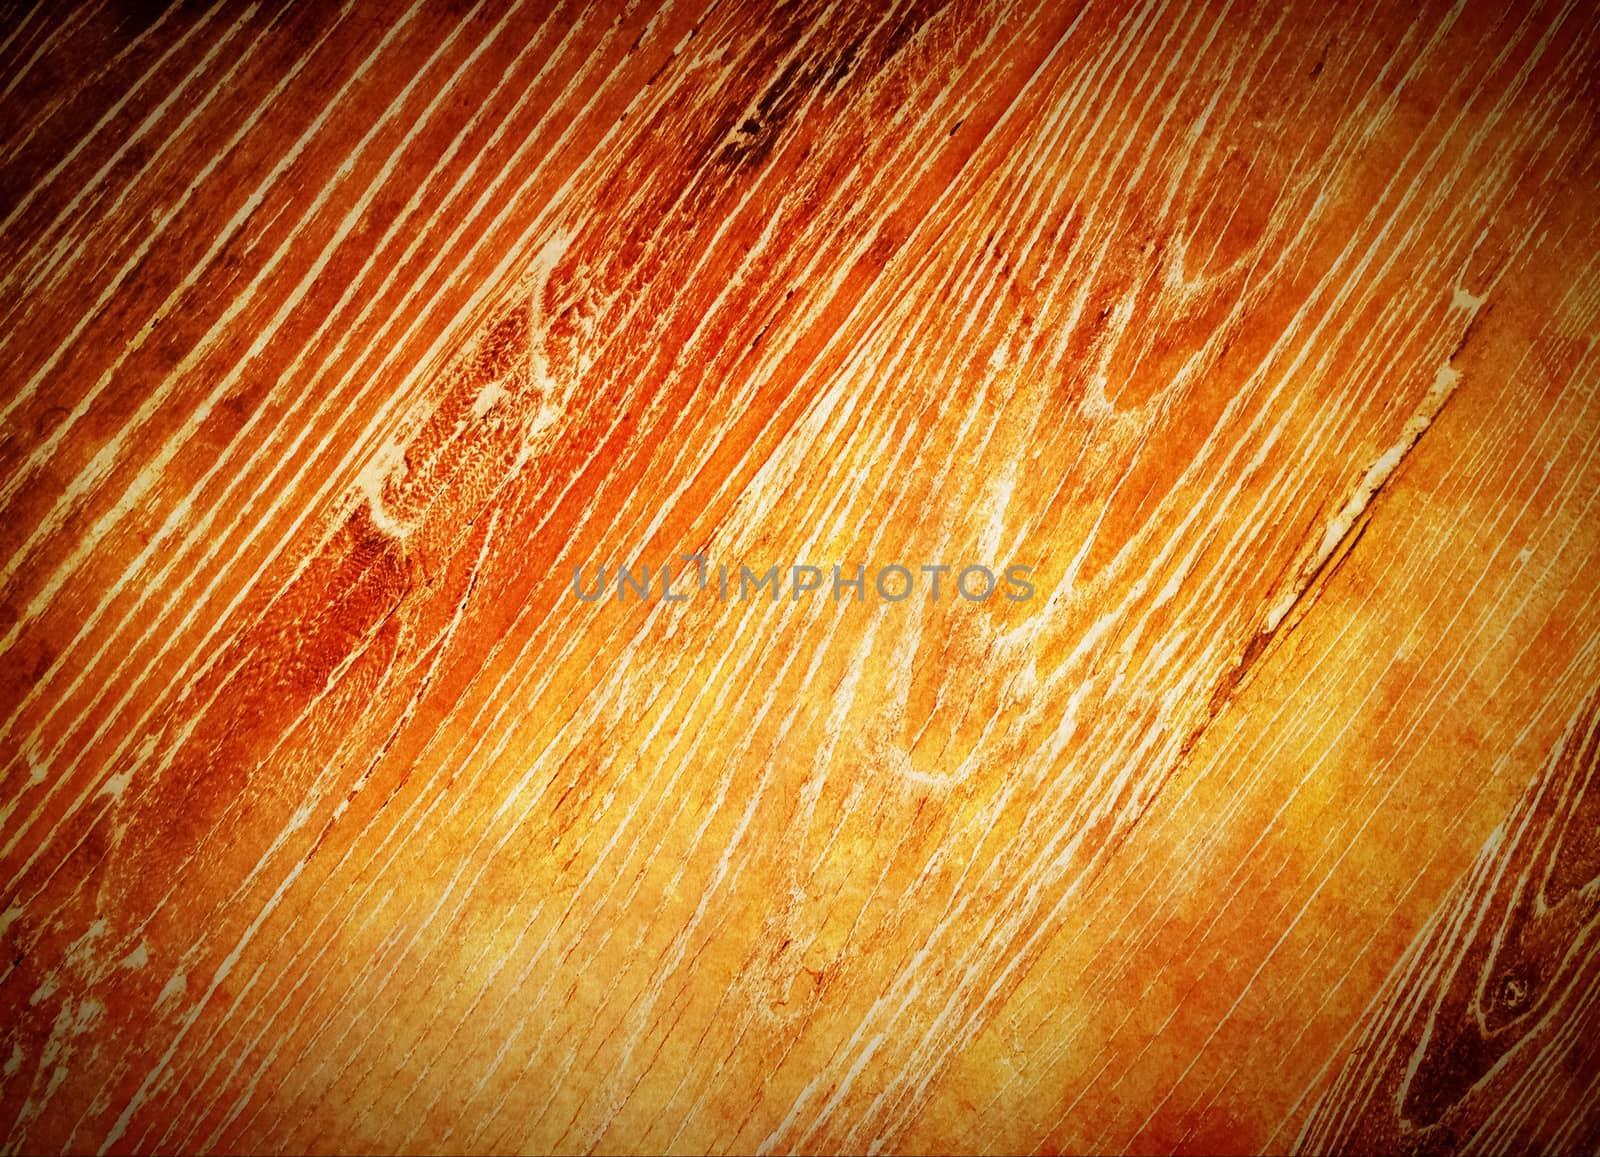 Warm orange wood background. Old wooden texture.